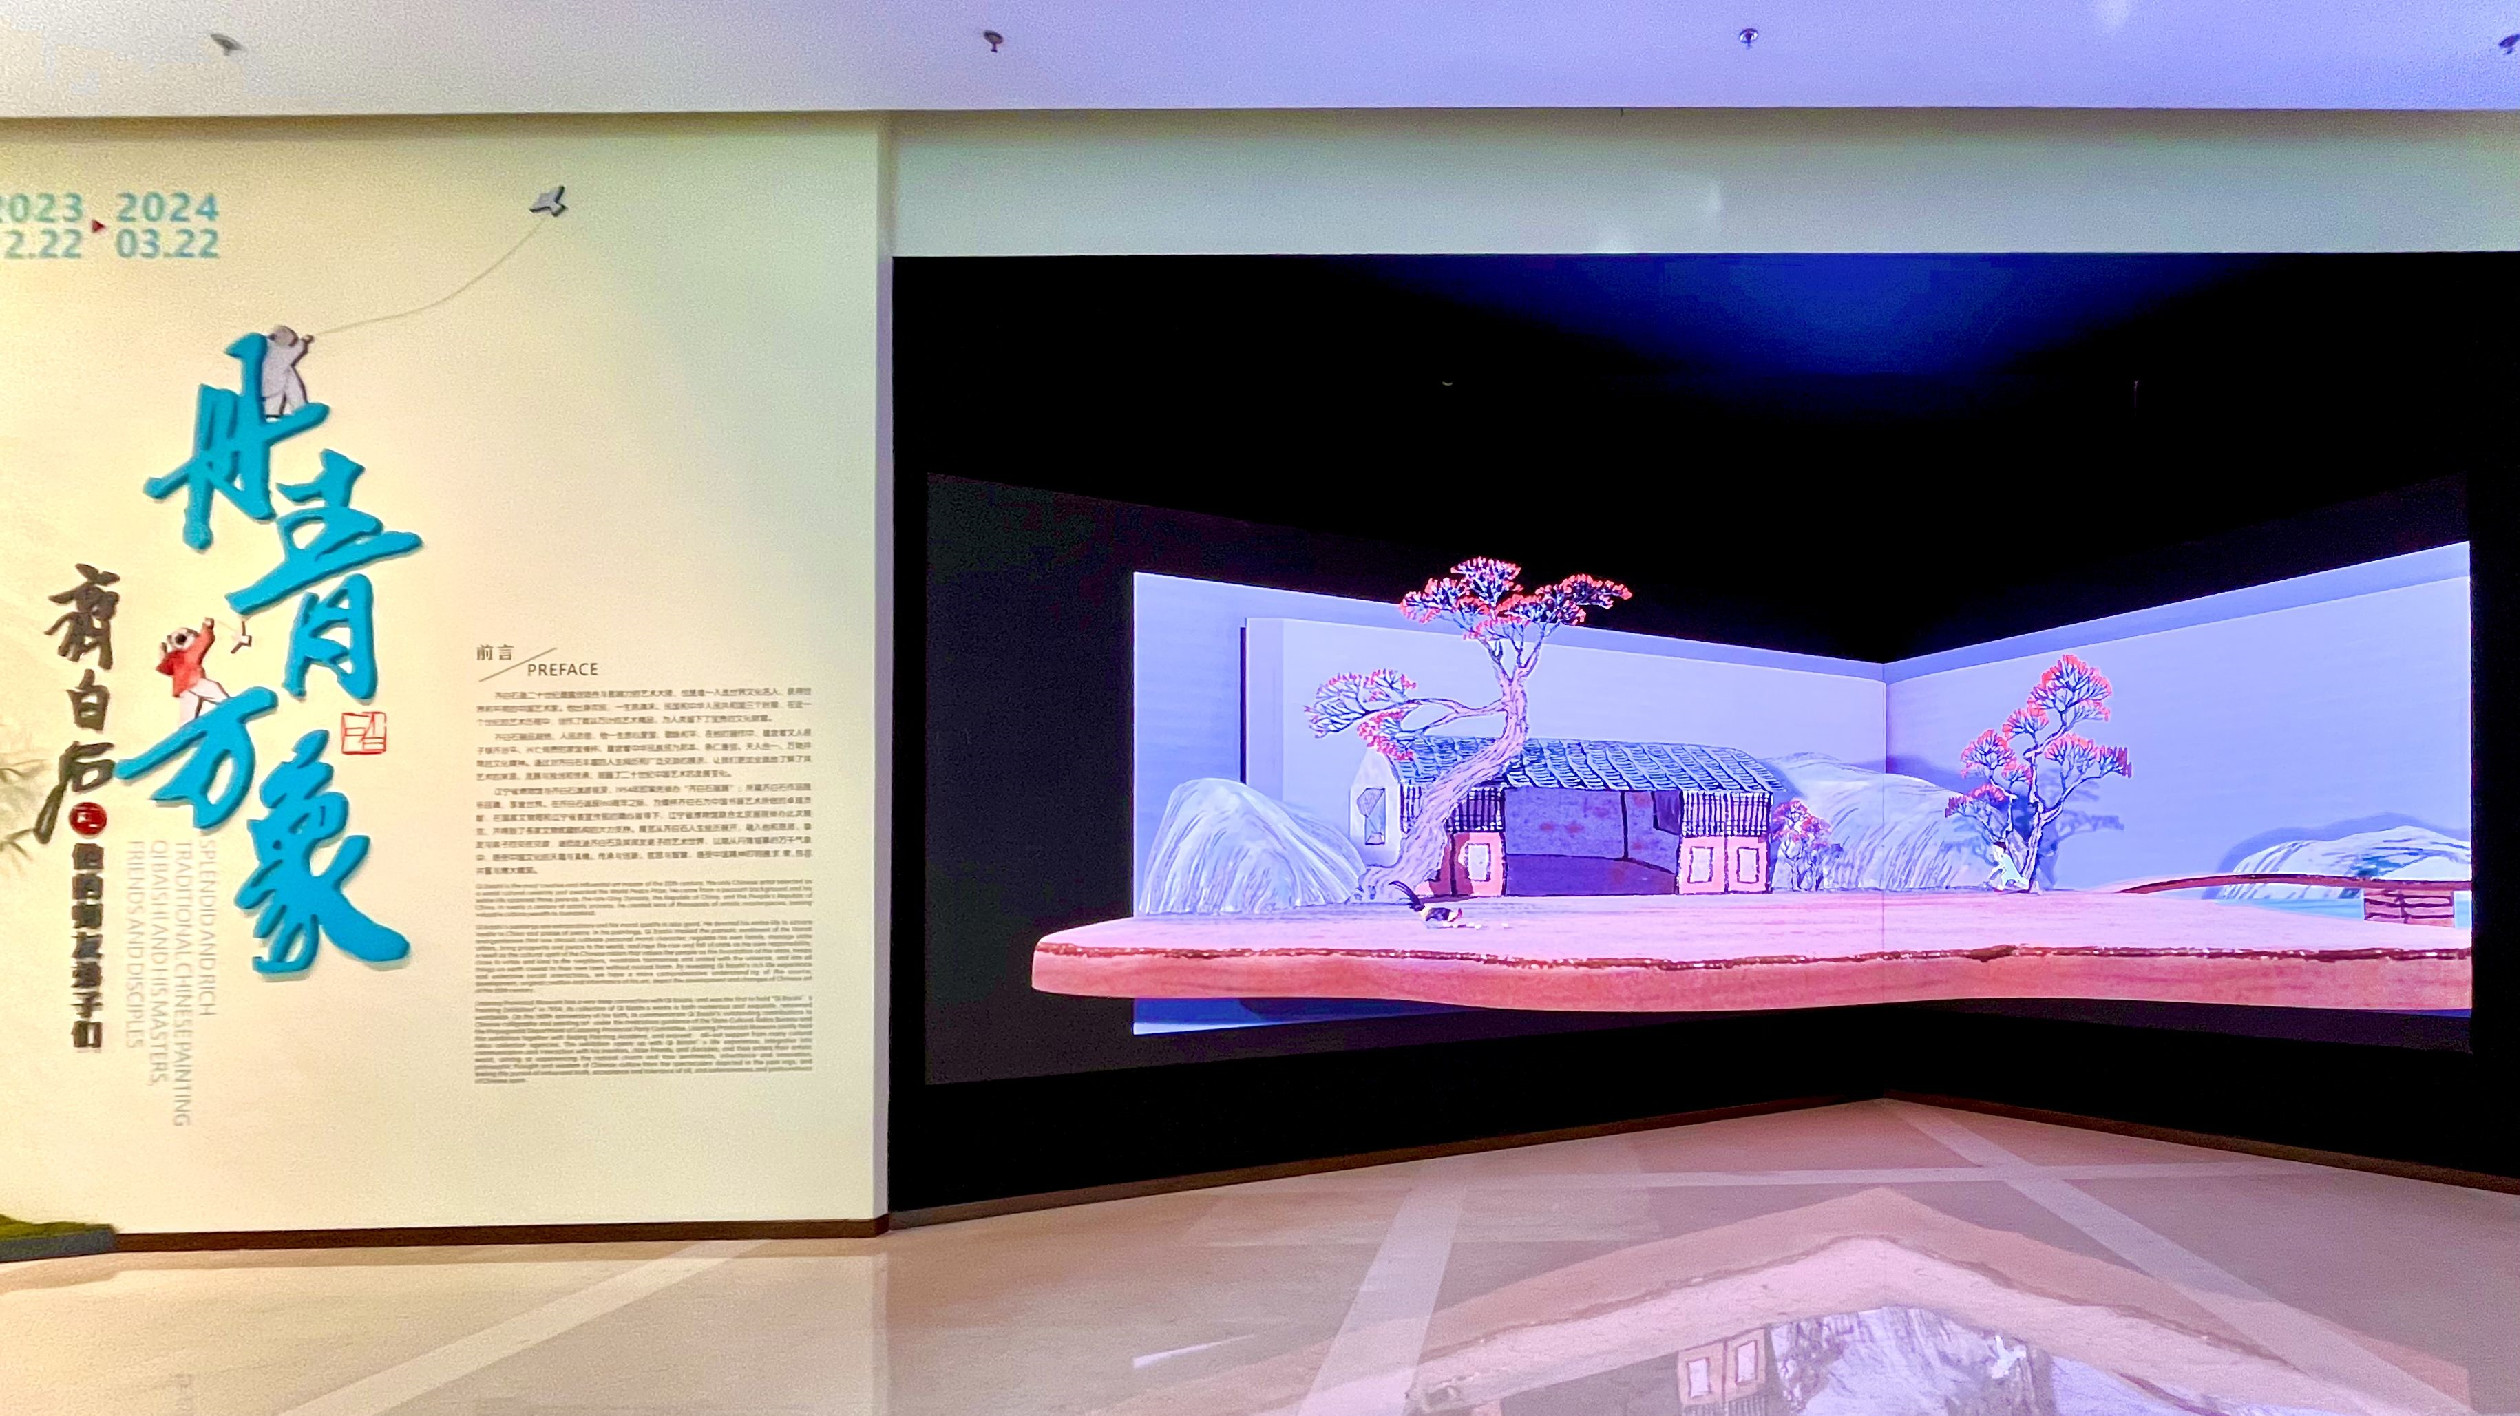 遼寧省博物館年末巨獻 大展啟幕 「丹青萬象——齊白石和他的師友弟子們」